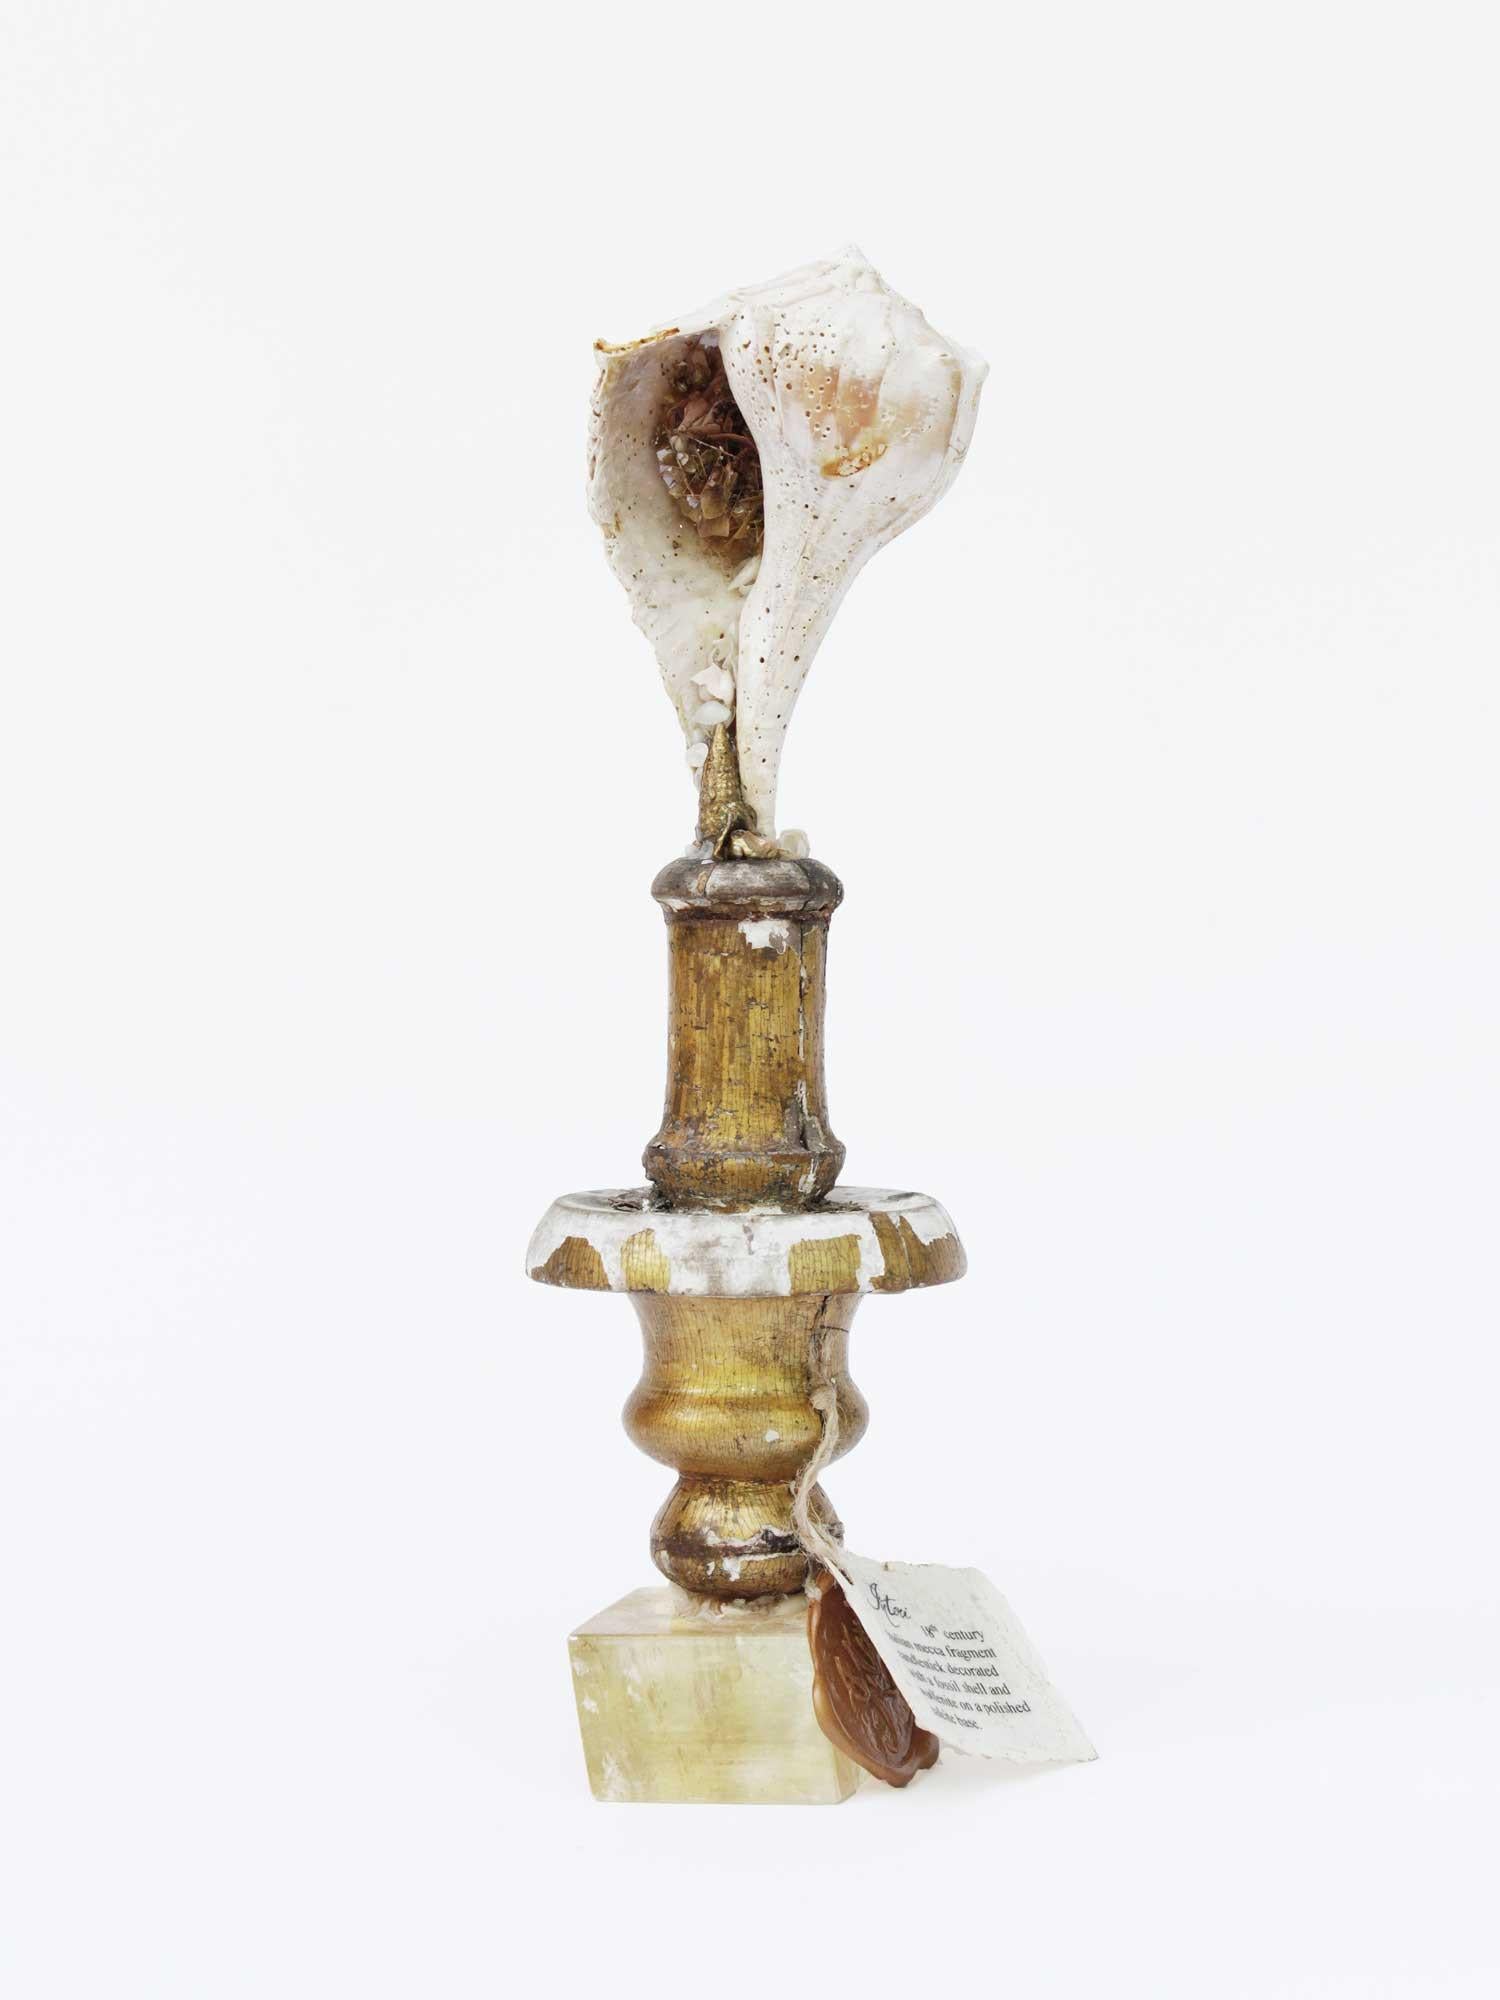 Bougeoir sculptural italien du XVIIIe siècle en forme de fragment de mecca avec une coquille fossile et de la wulfénite sur une base en calcite polie.

Le fragment faisait à l'origine partie d'un chandelier italien du XVIIIe siècle provenant d'une